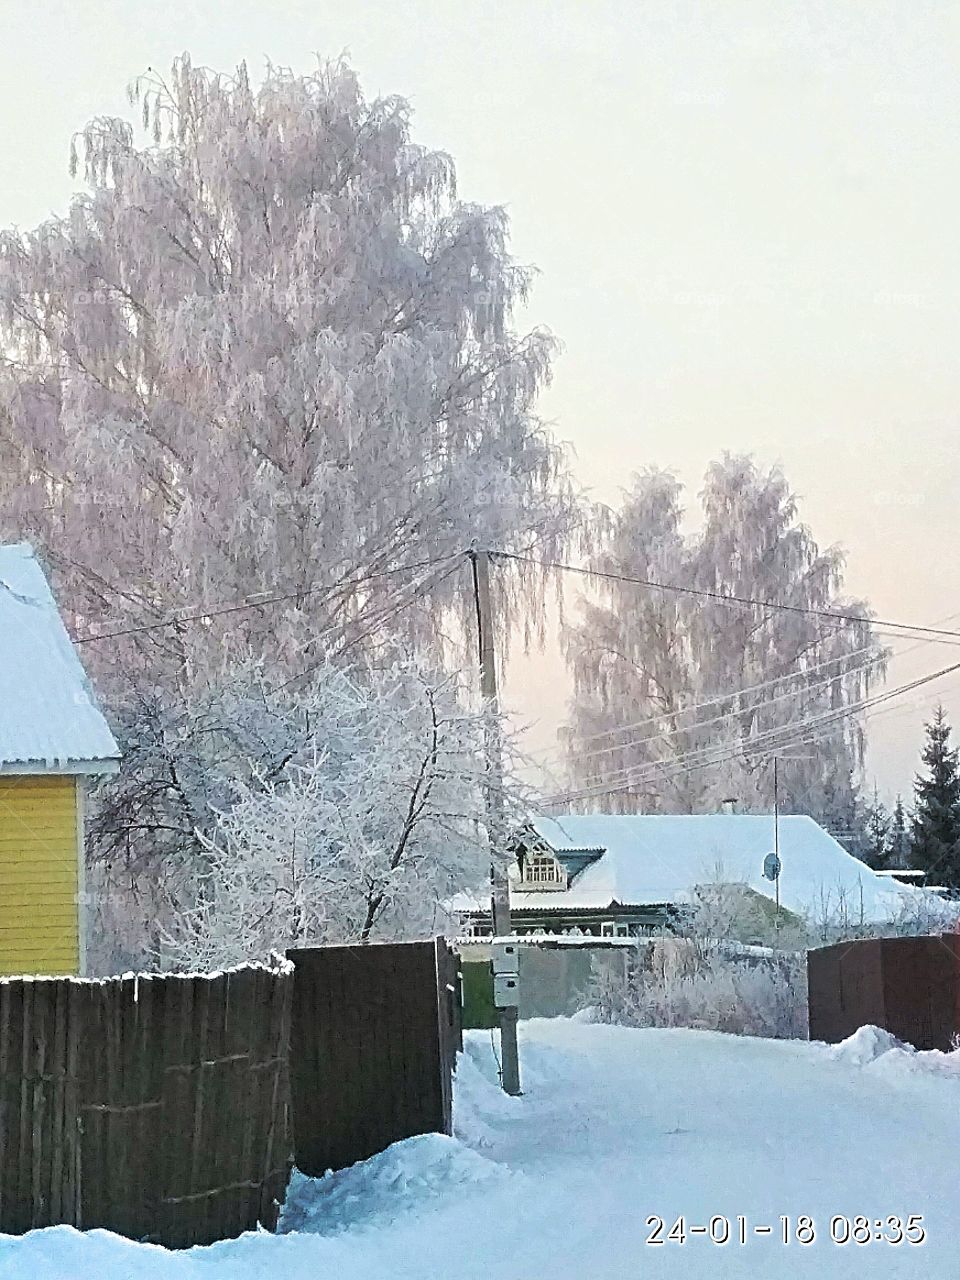 раннее, зимнее утро, деревня, деревья в иние, мороз,нежно-голубое небо,дома в снегу.